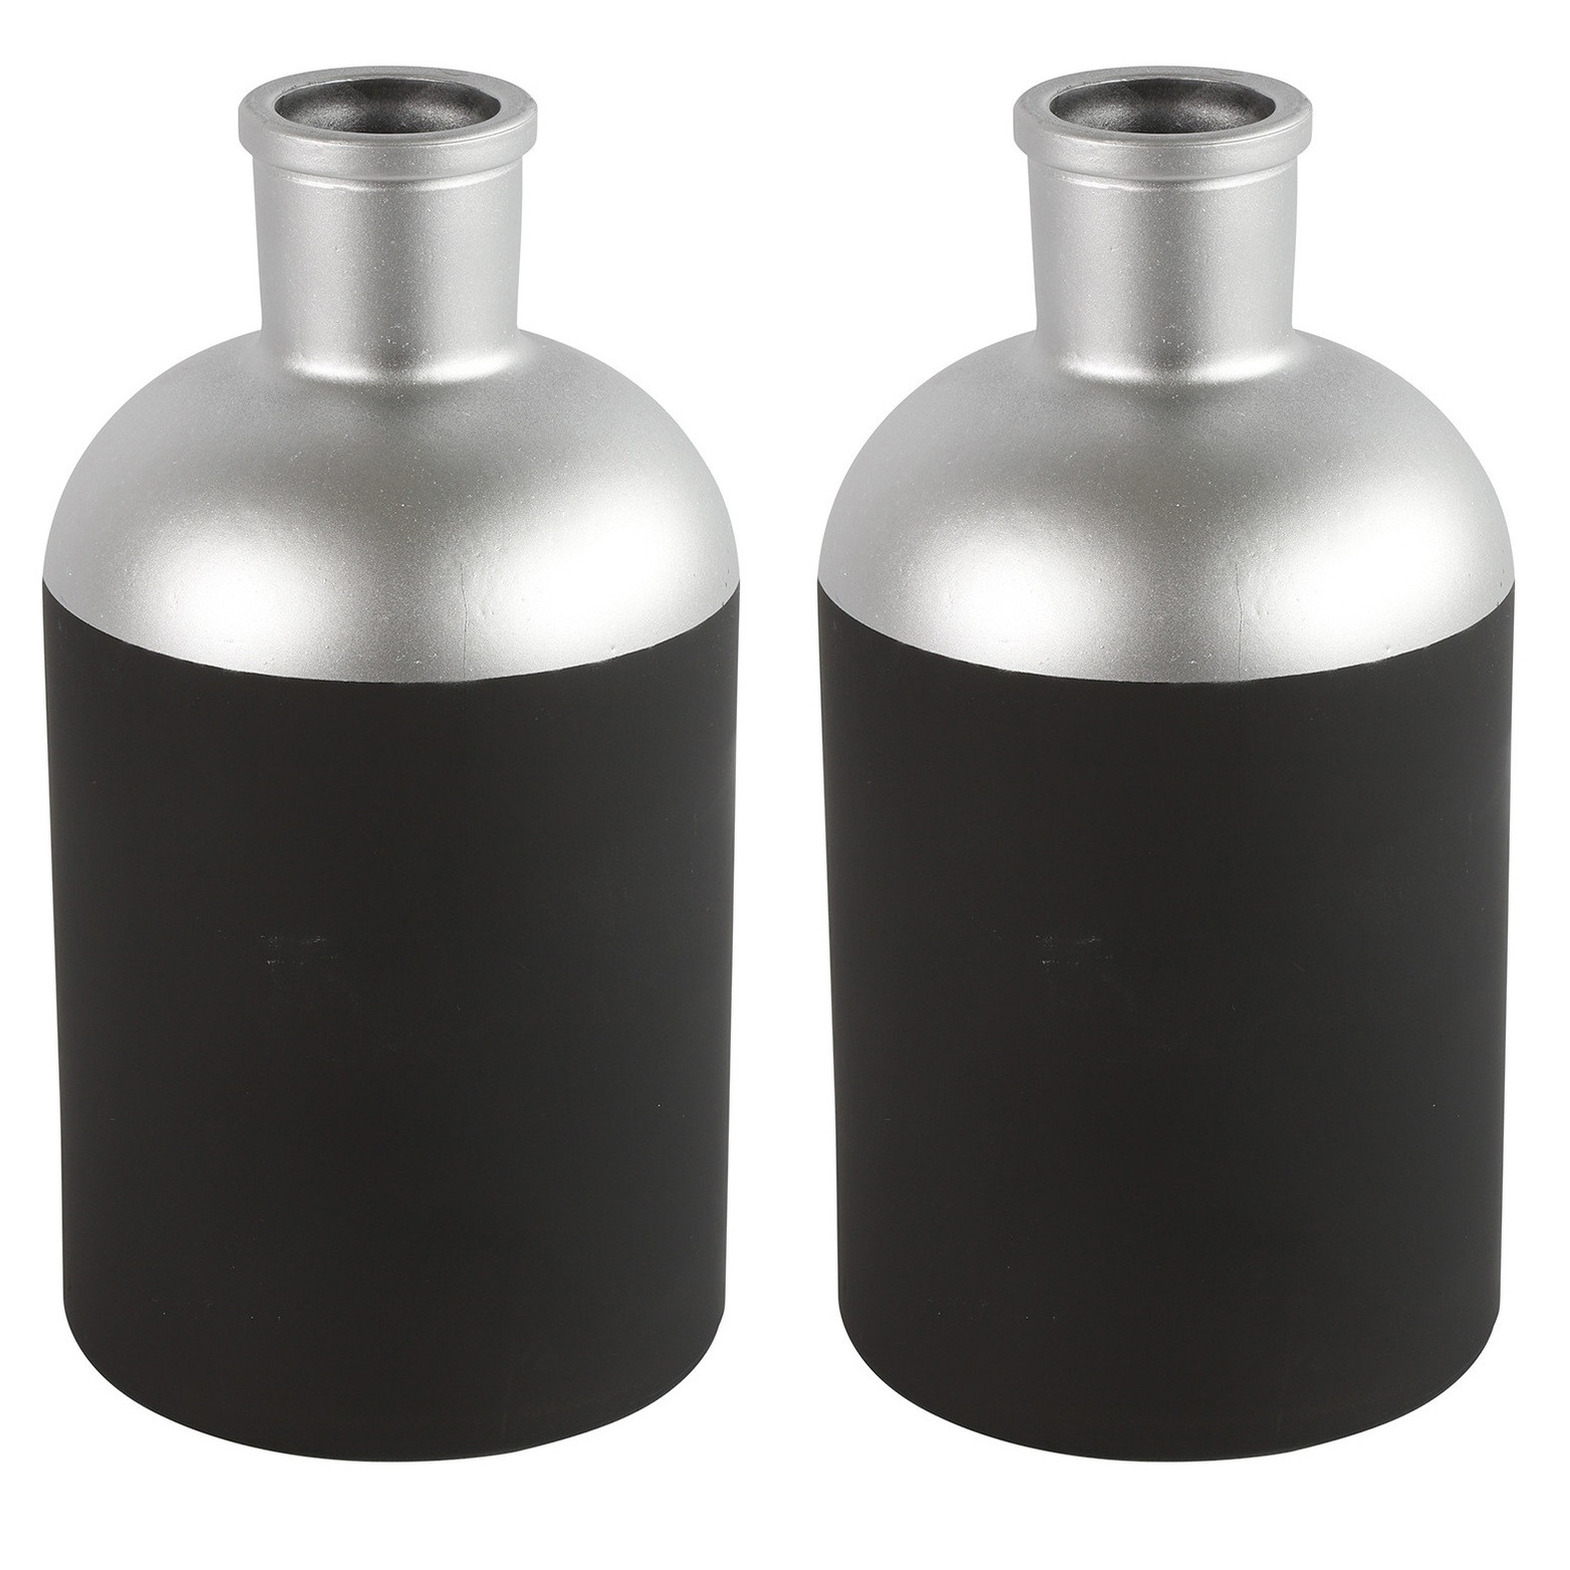 Countryfield Bloemen-Deco vaas 2x zwart-zilver glas 14 x 26 cm